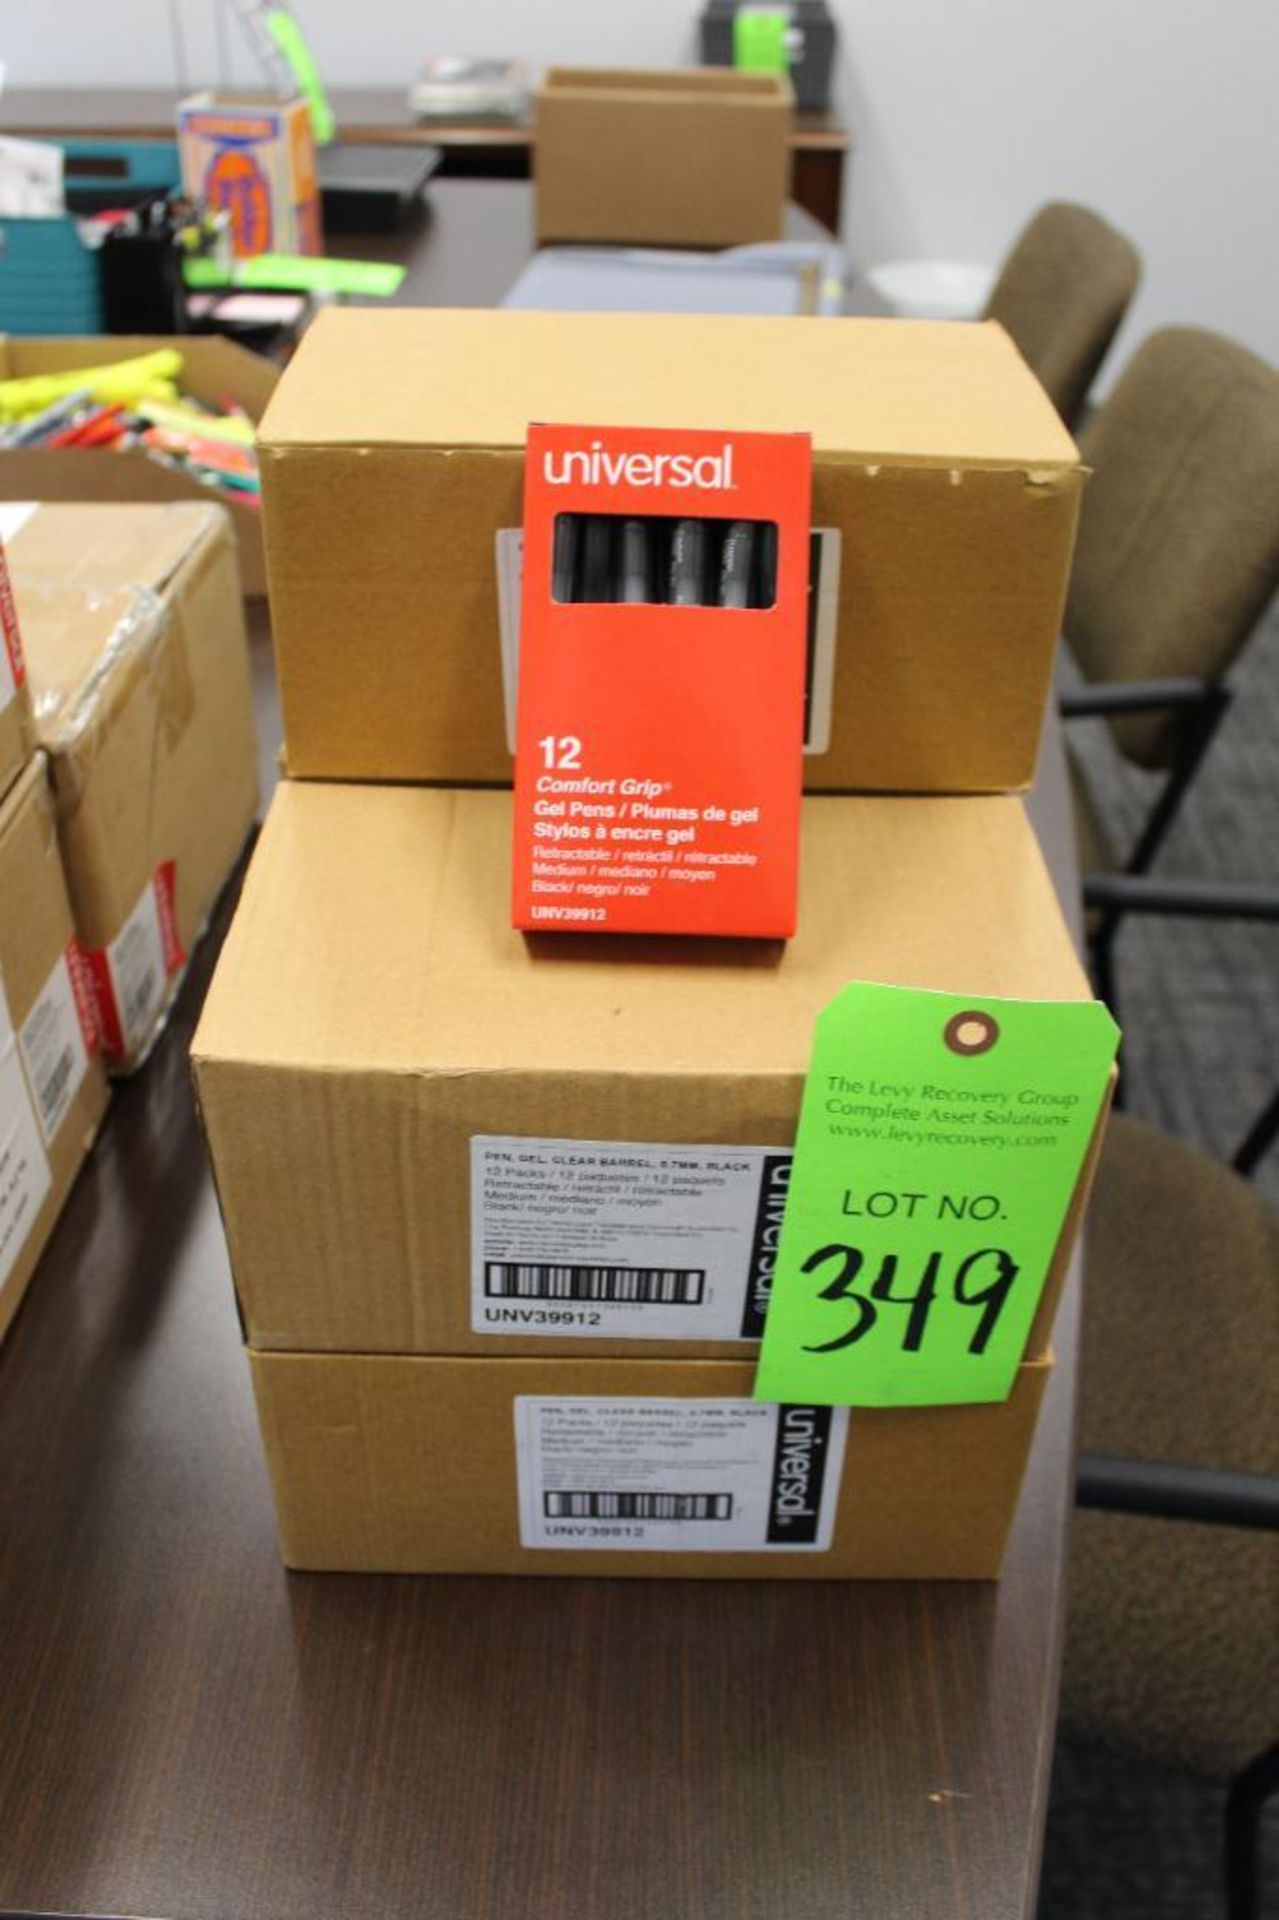 Lot of Universal (New) Comfort Grip Gel Pens - 12 Packs per box, 5 boxes